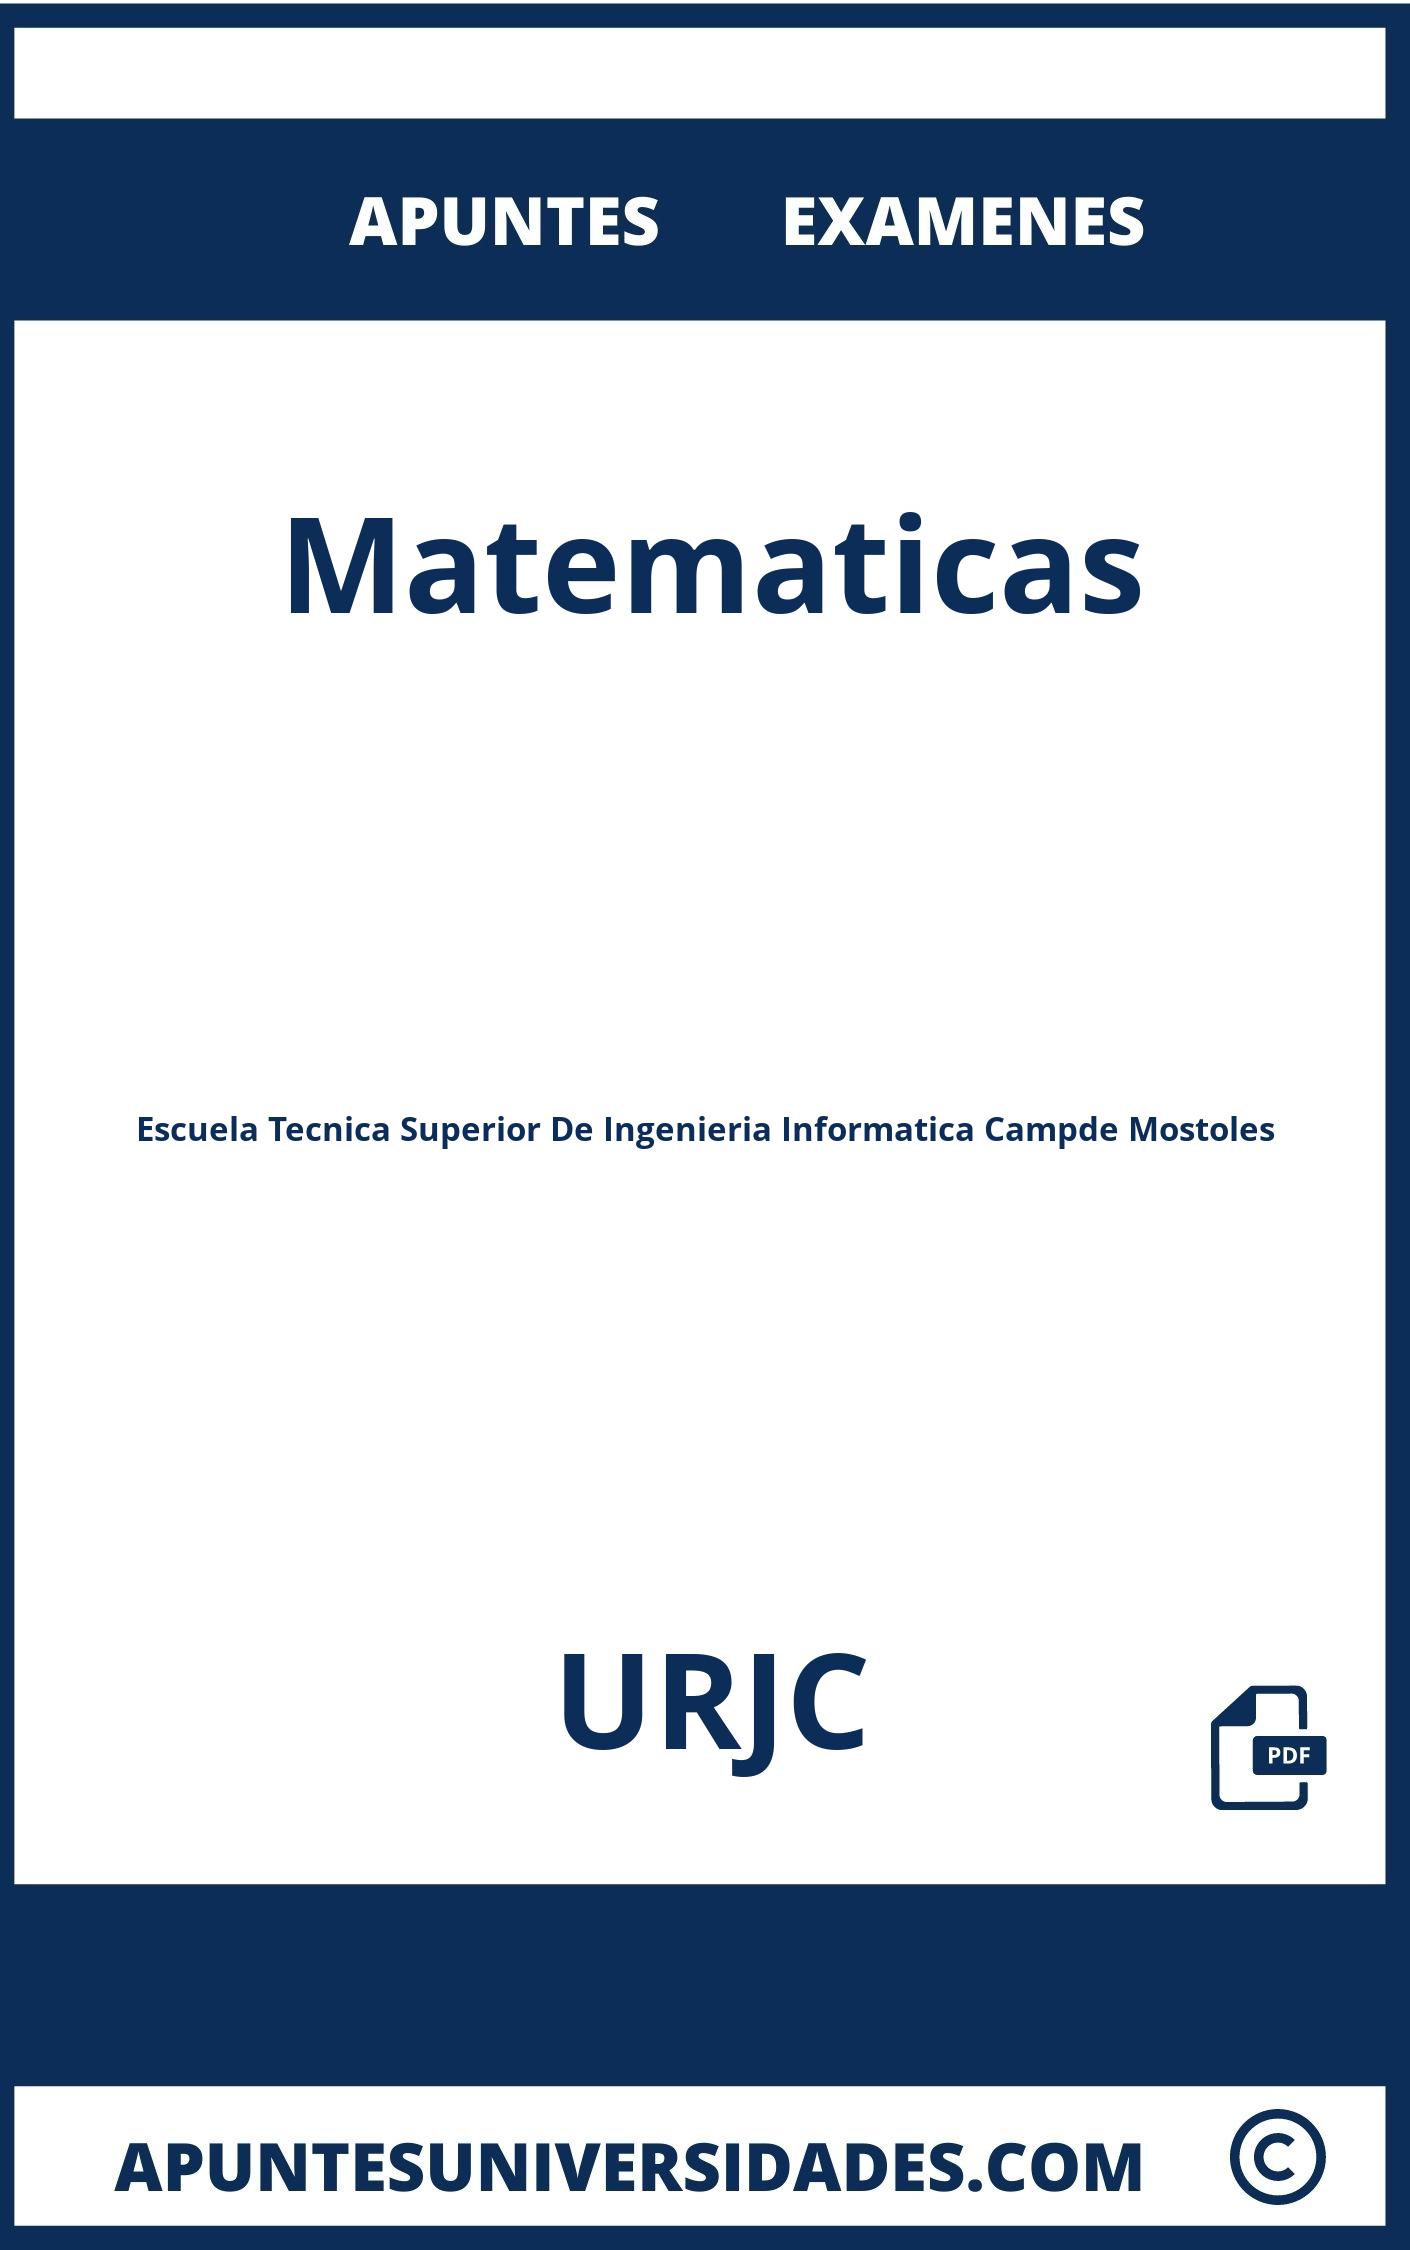 Apuntes y Examenes Matematicas URJC